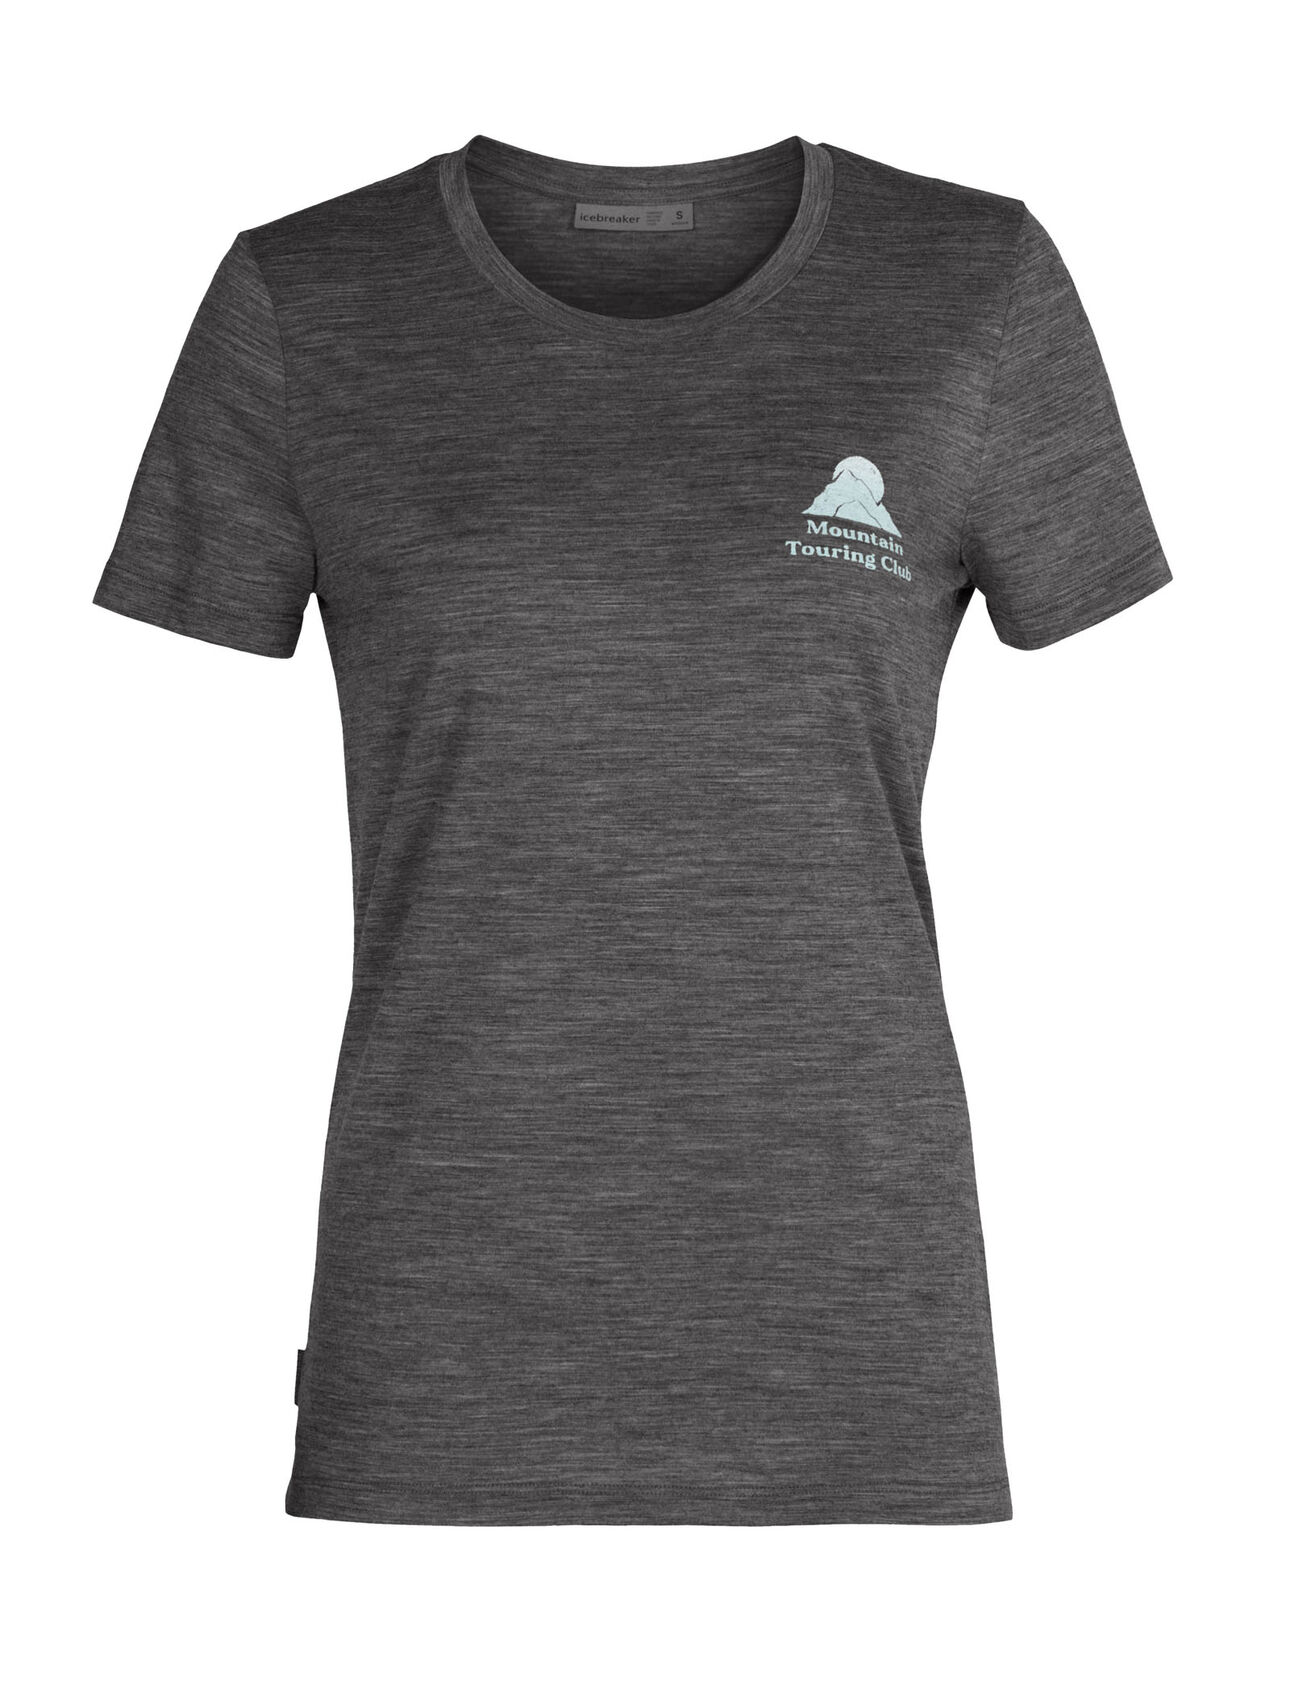 Merino Tech Lite II Short Sleeve T-Shirt Mountain Touring Club